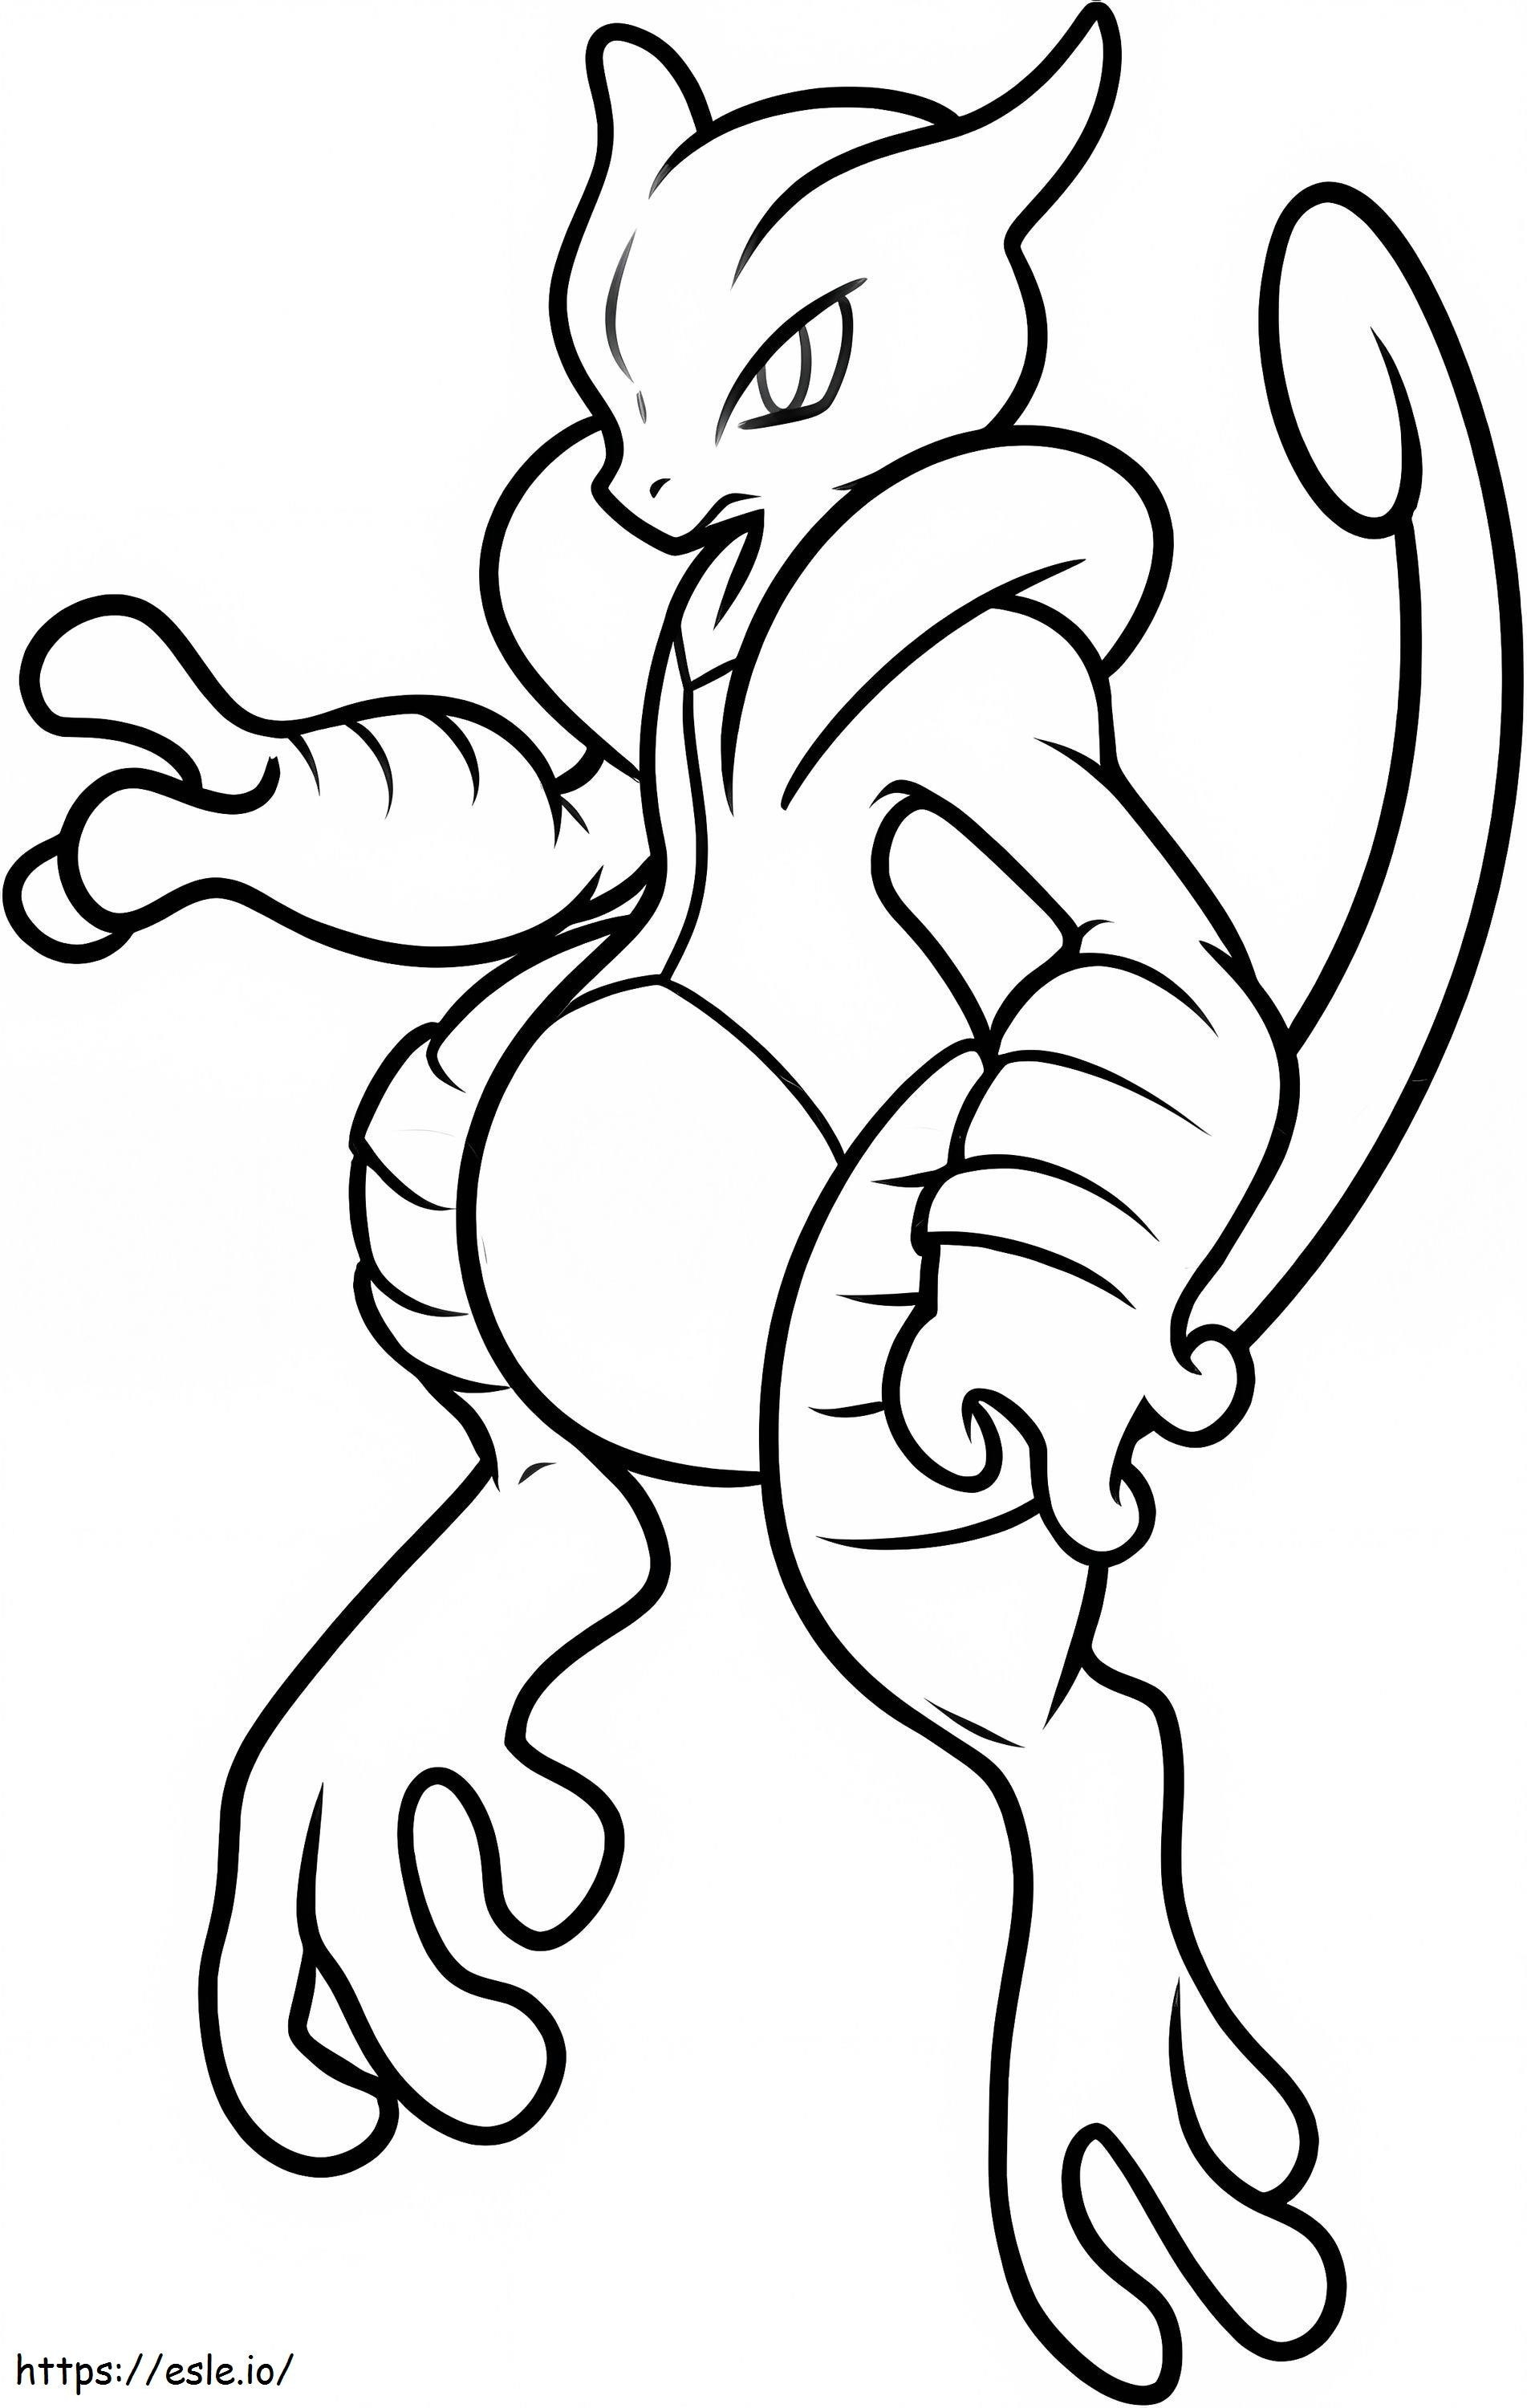 Coloriage Mewtwo dans Pokémon Légendaire à imprimer dessin